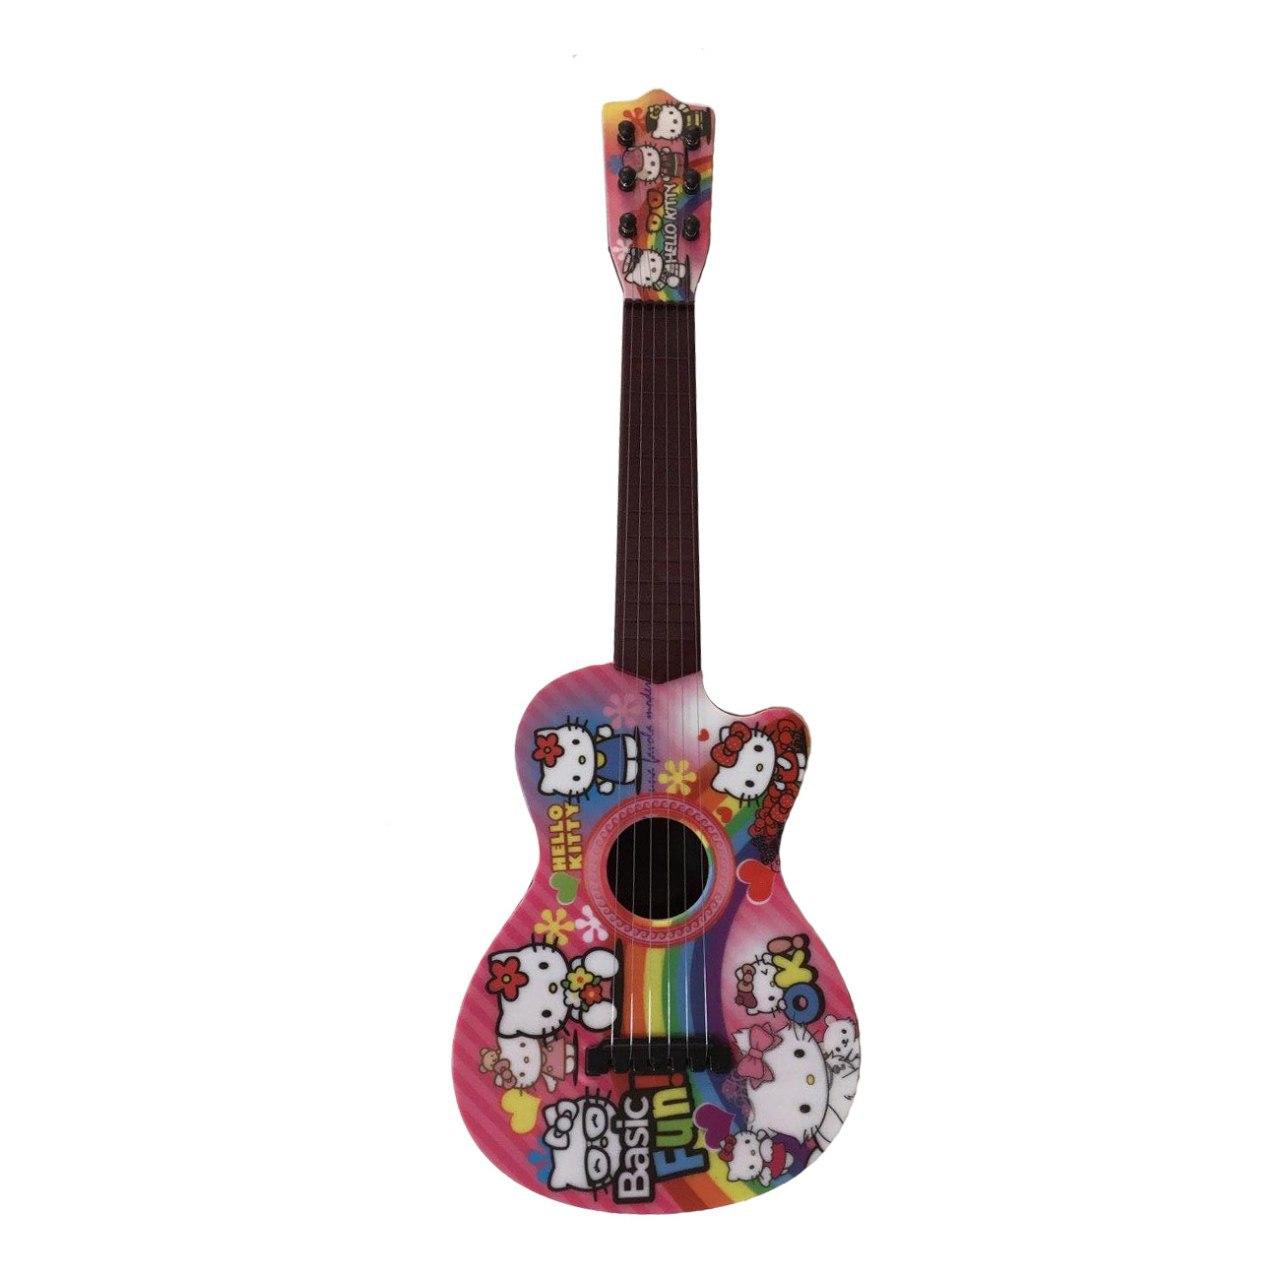 نقد و بررسی گیتار اسباب بازی مدل S63 طرح Hello Kitty توسط خریداران